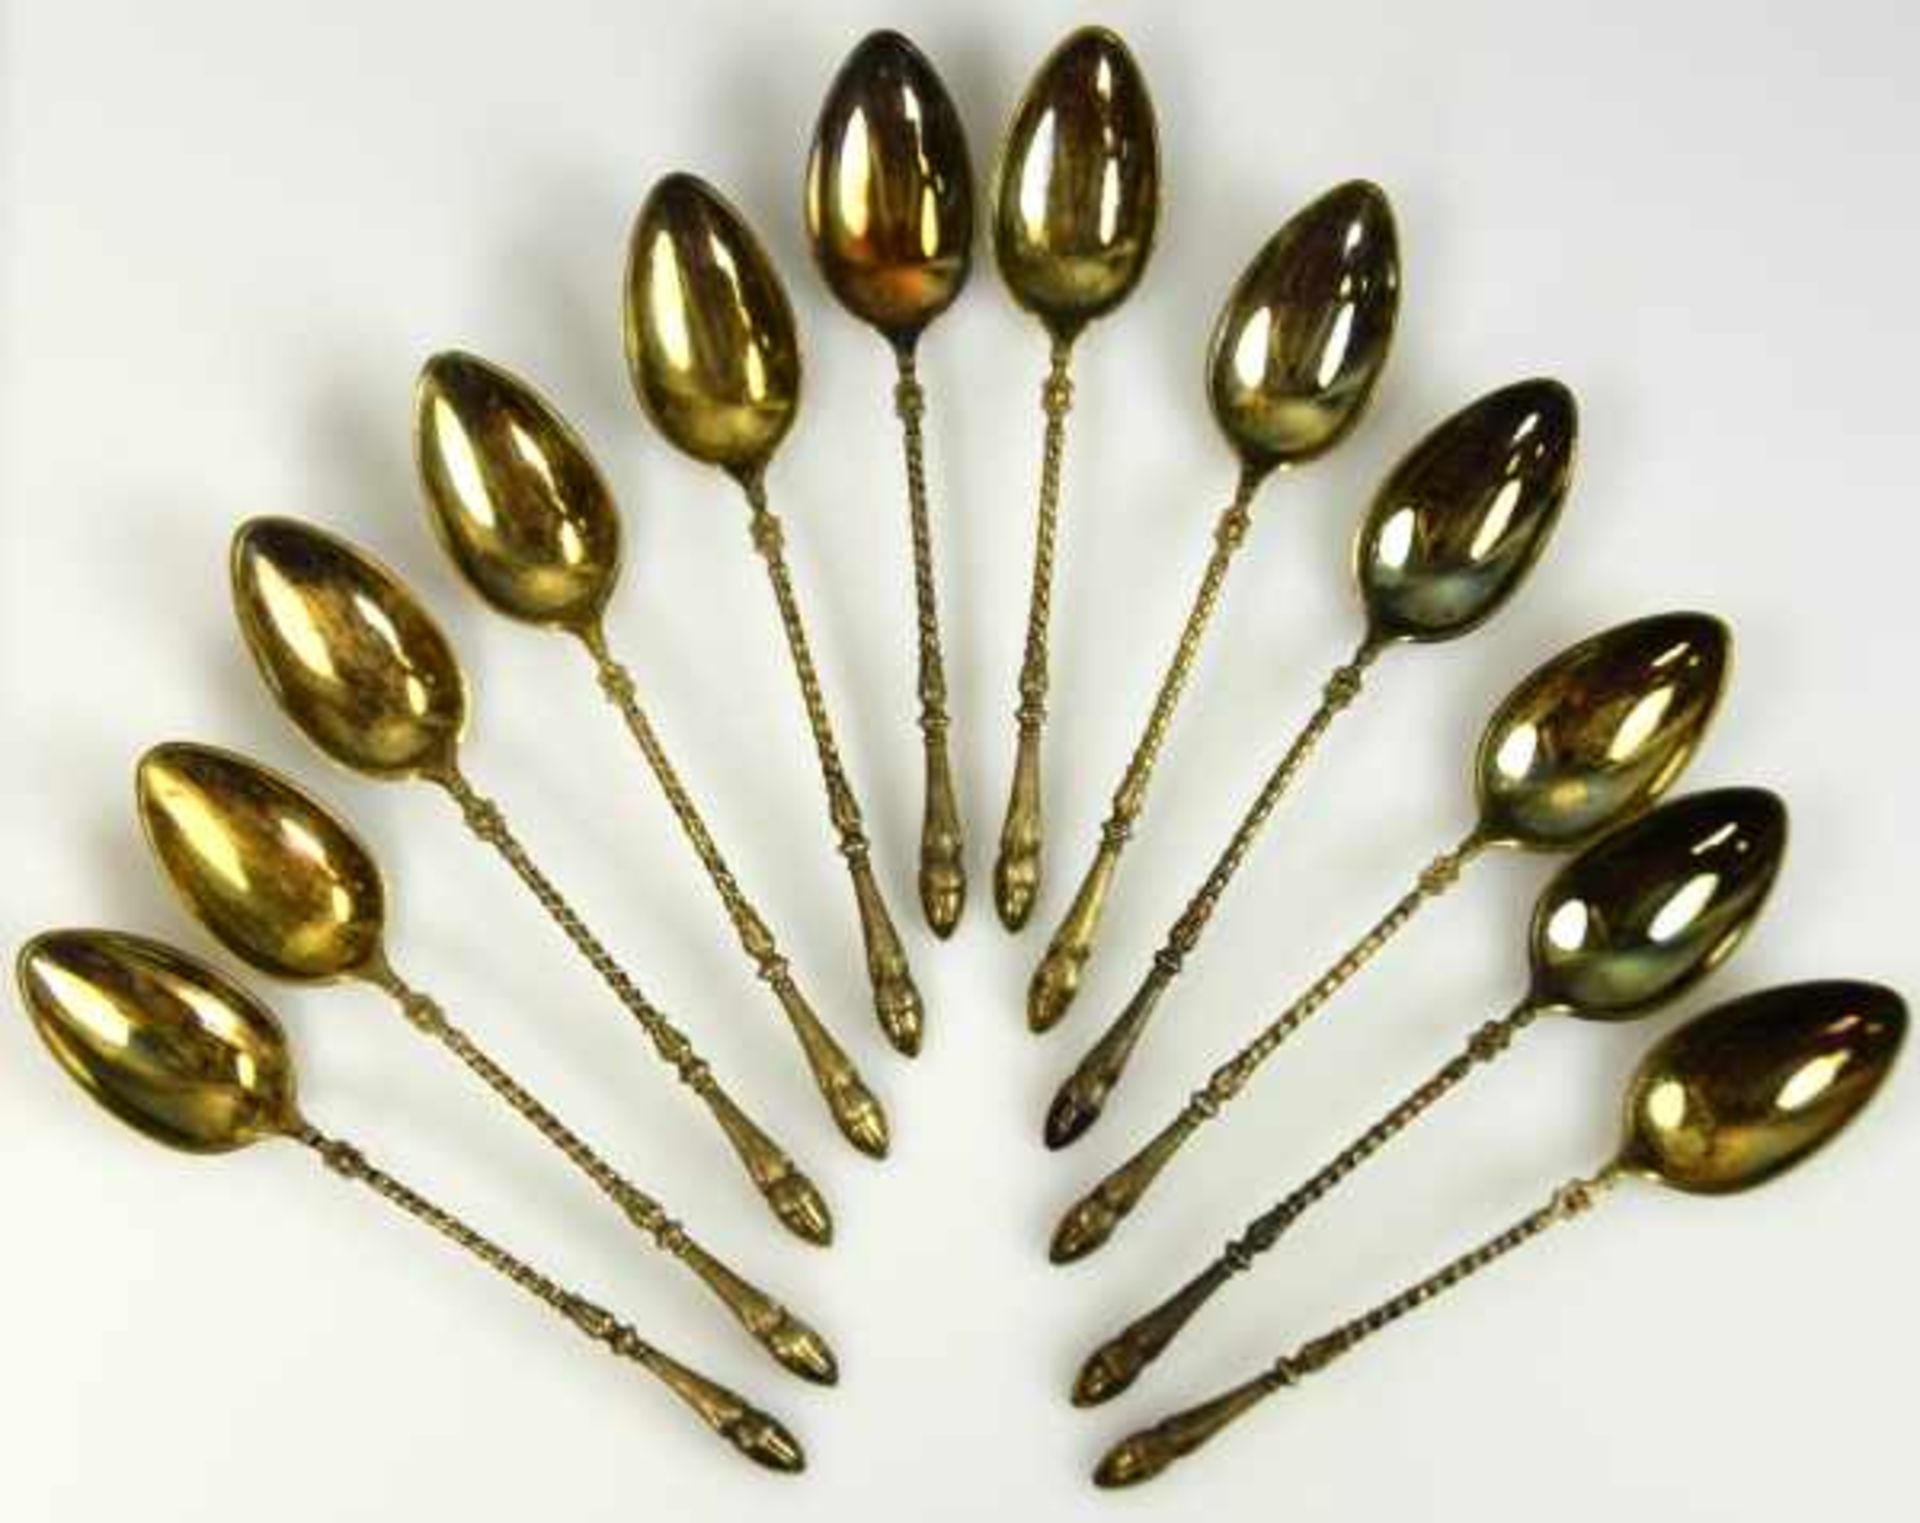 LÖFFEL-LOT 12 Mokkalöffel, aufwendig dekorierte Griffe mit Rehvorderlauf, Silber 800, vergoldet, 115